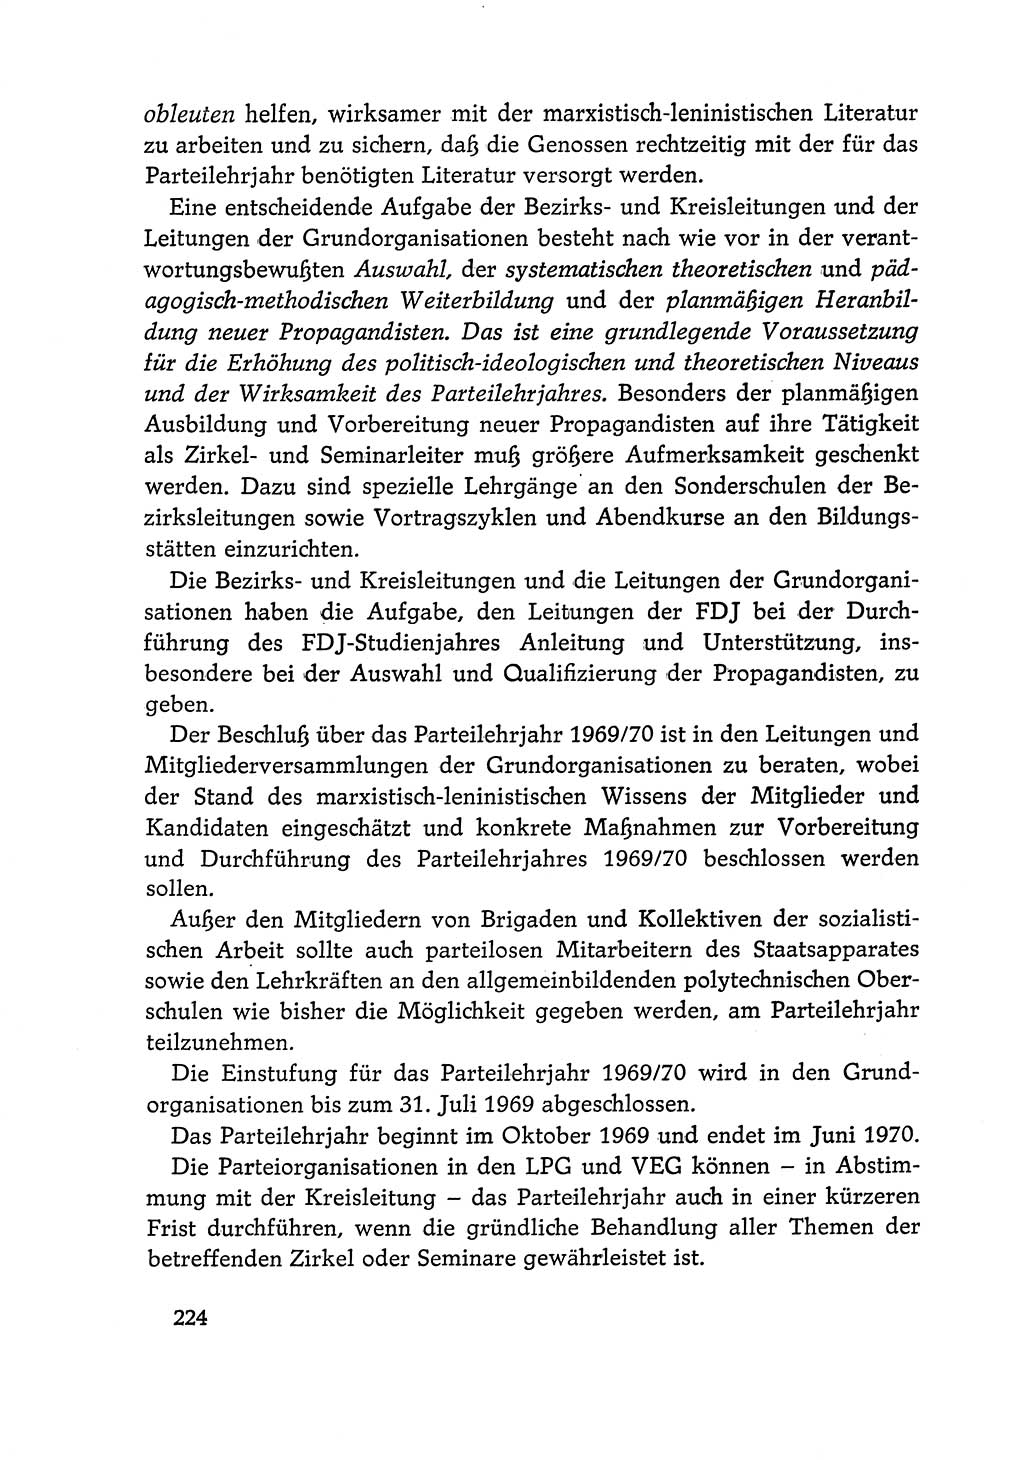 Dokumente der Sozialistischen Einheitspartei Deutschlands (SED) [Deutsche Demokratische Republik (DDR)] 1968-1969, Seite 224 (Dok. SED DDR 1968-1969, S. 224)